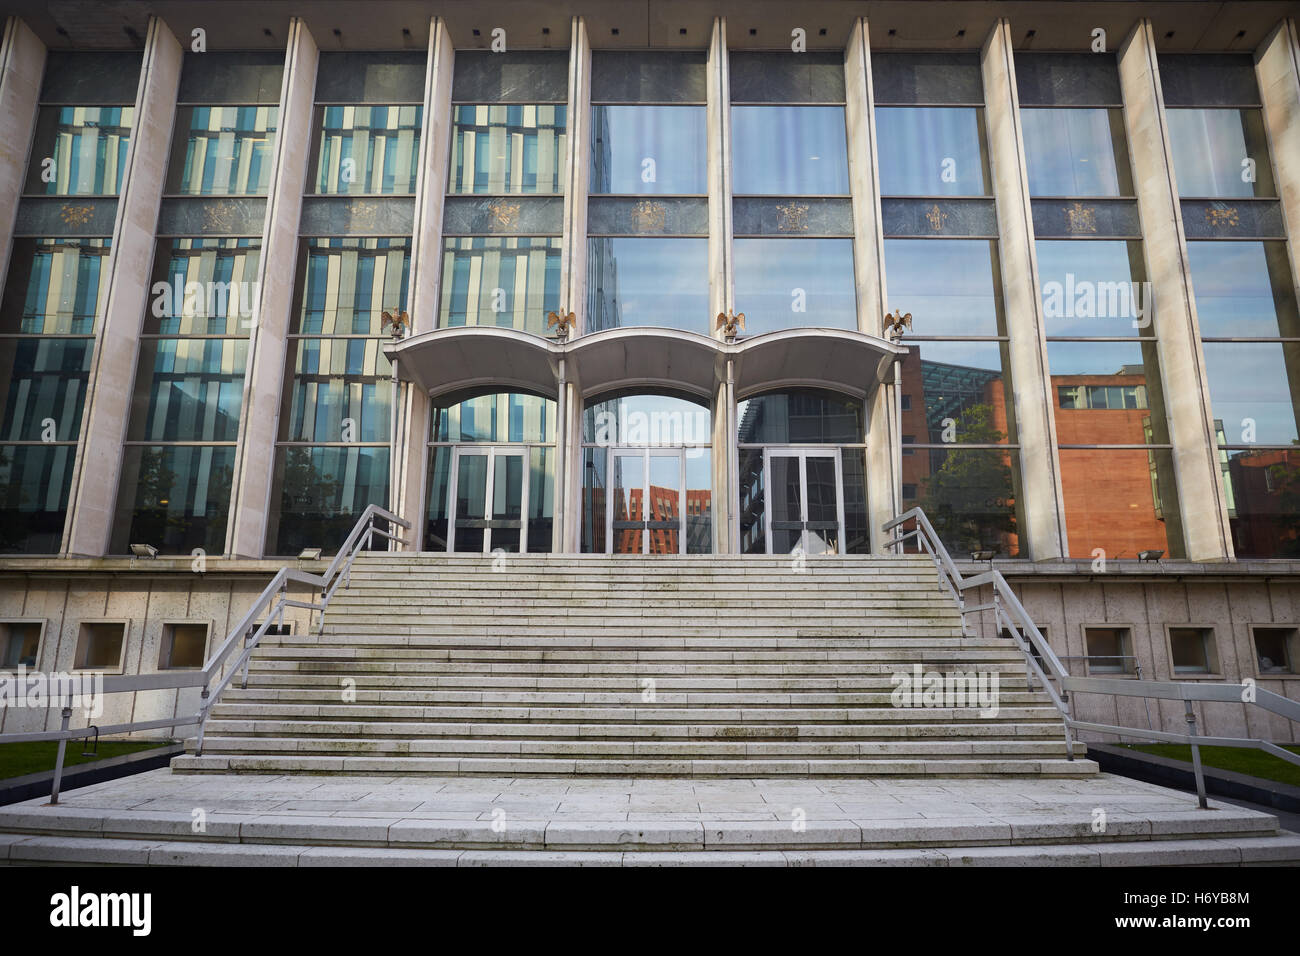 Le Tribunal de la Couronne de Manchester Square de la Couronne des mesures extérieures de la loi de l'architecture de l'immeuble du centre de la justice crime law punishm Banque D'Images